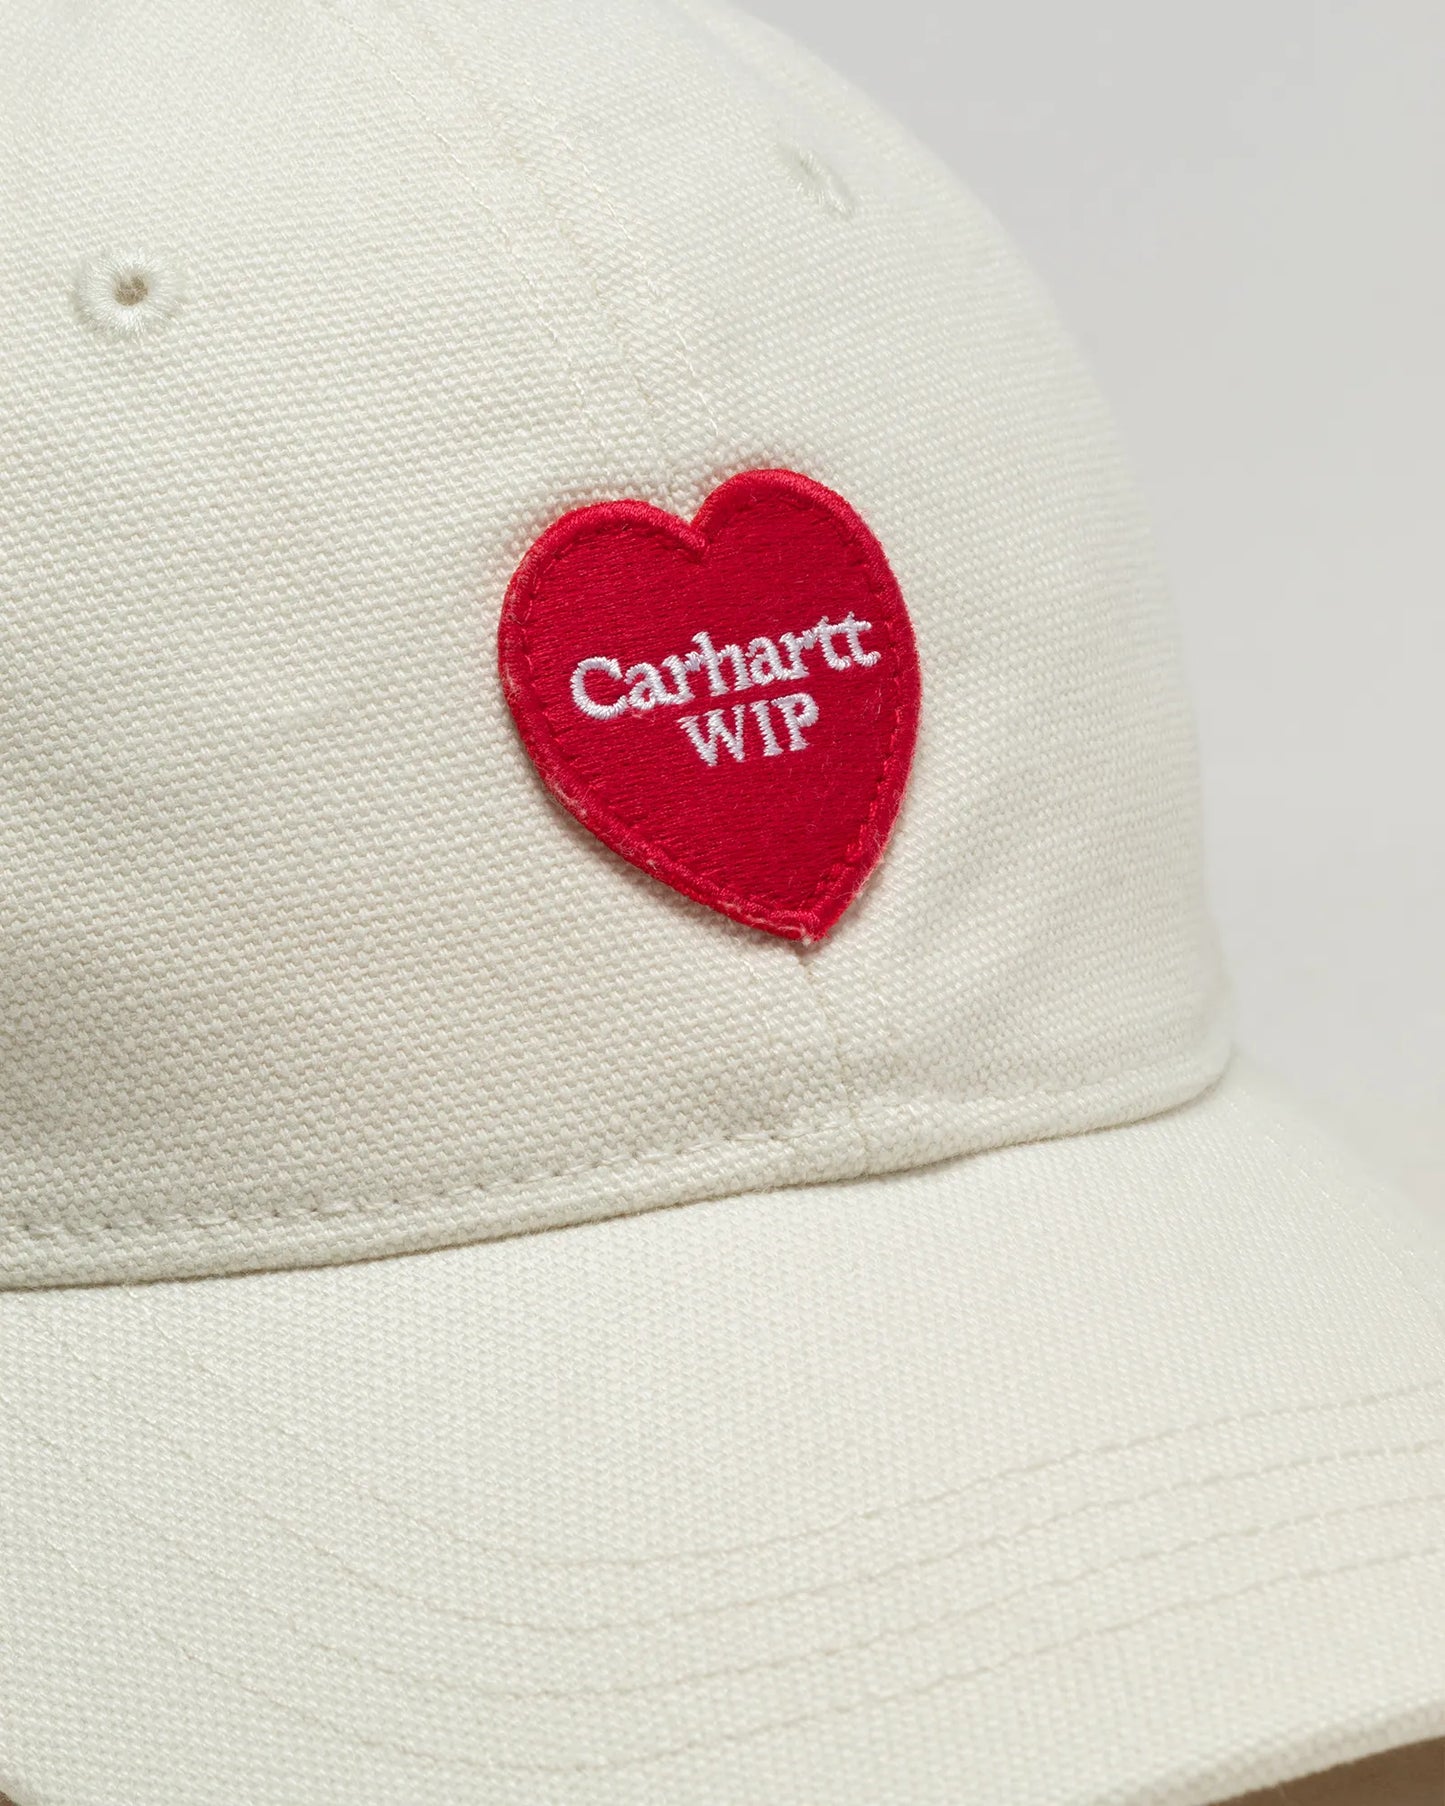 CARHARTT WIP HEART PATCH CAP - Natural